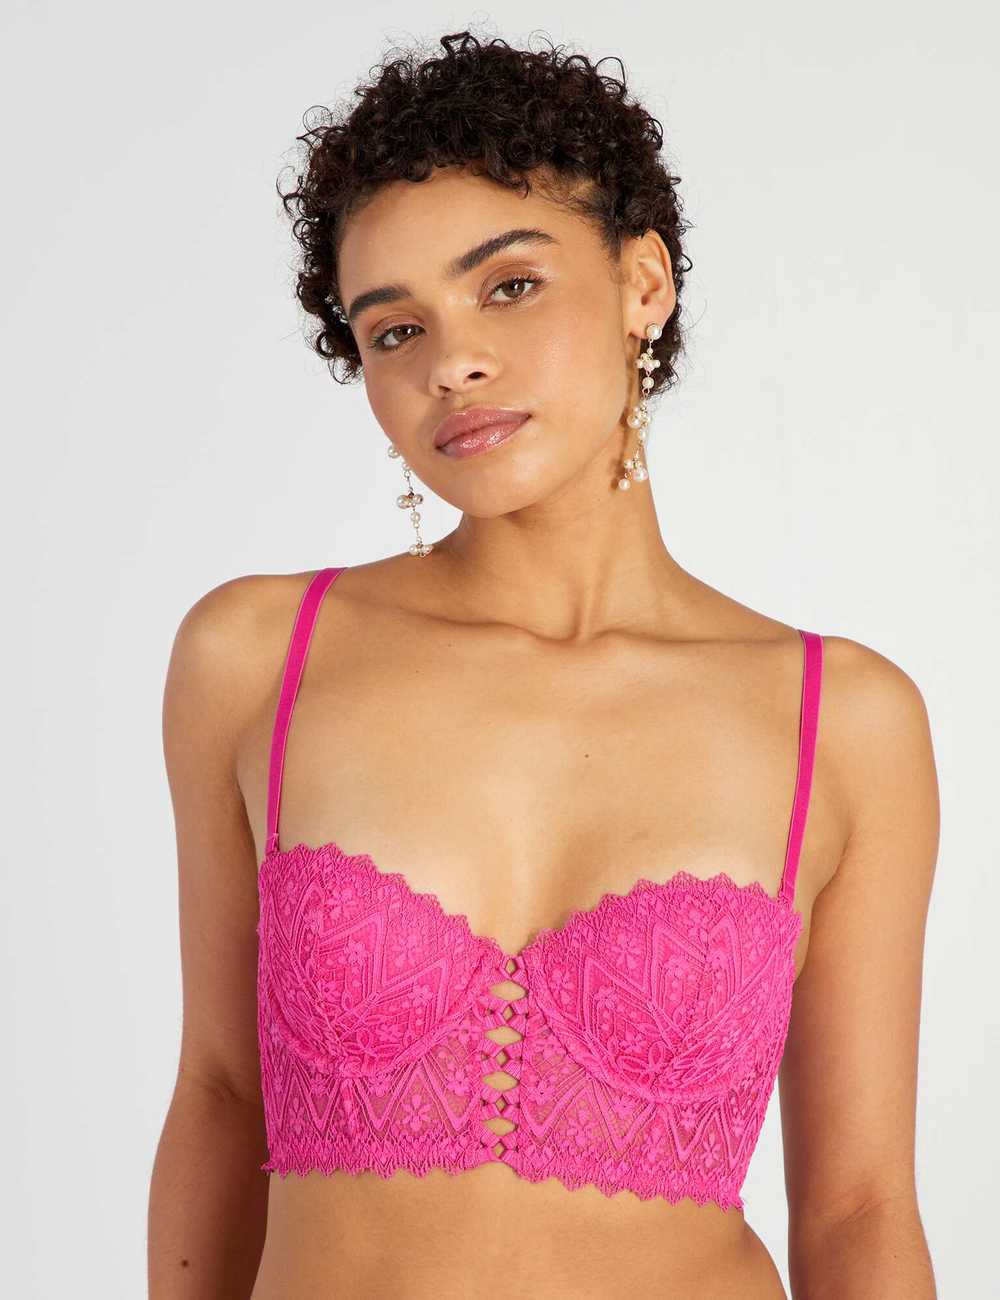 Lace bustier bra